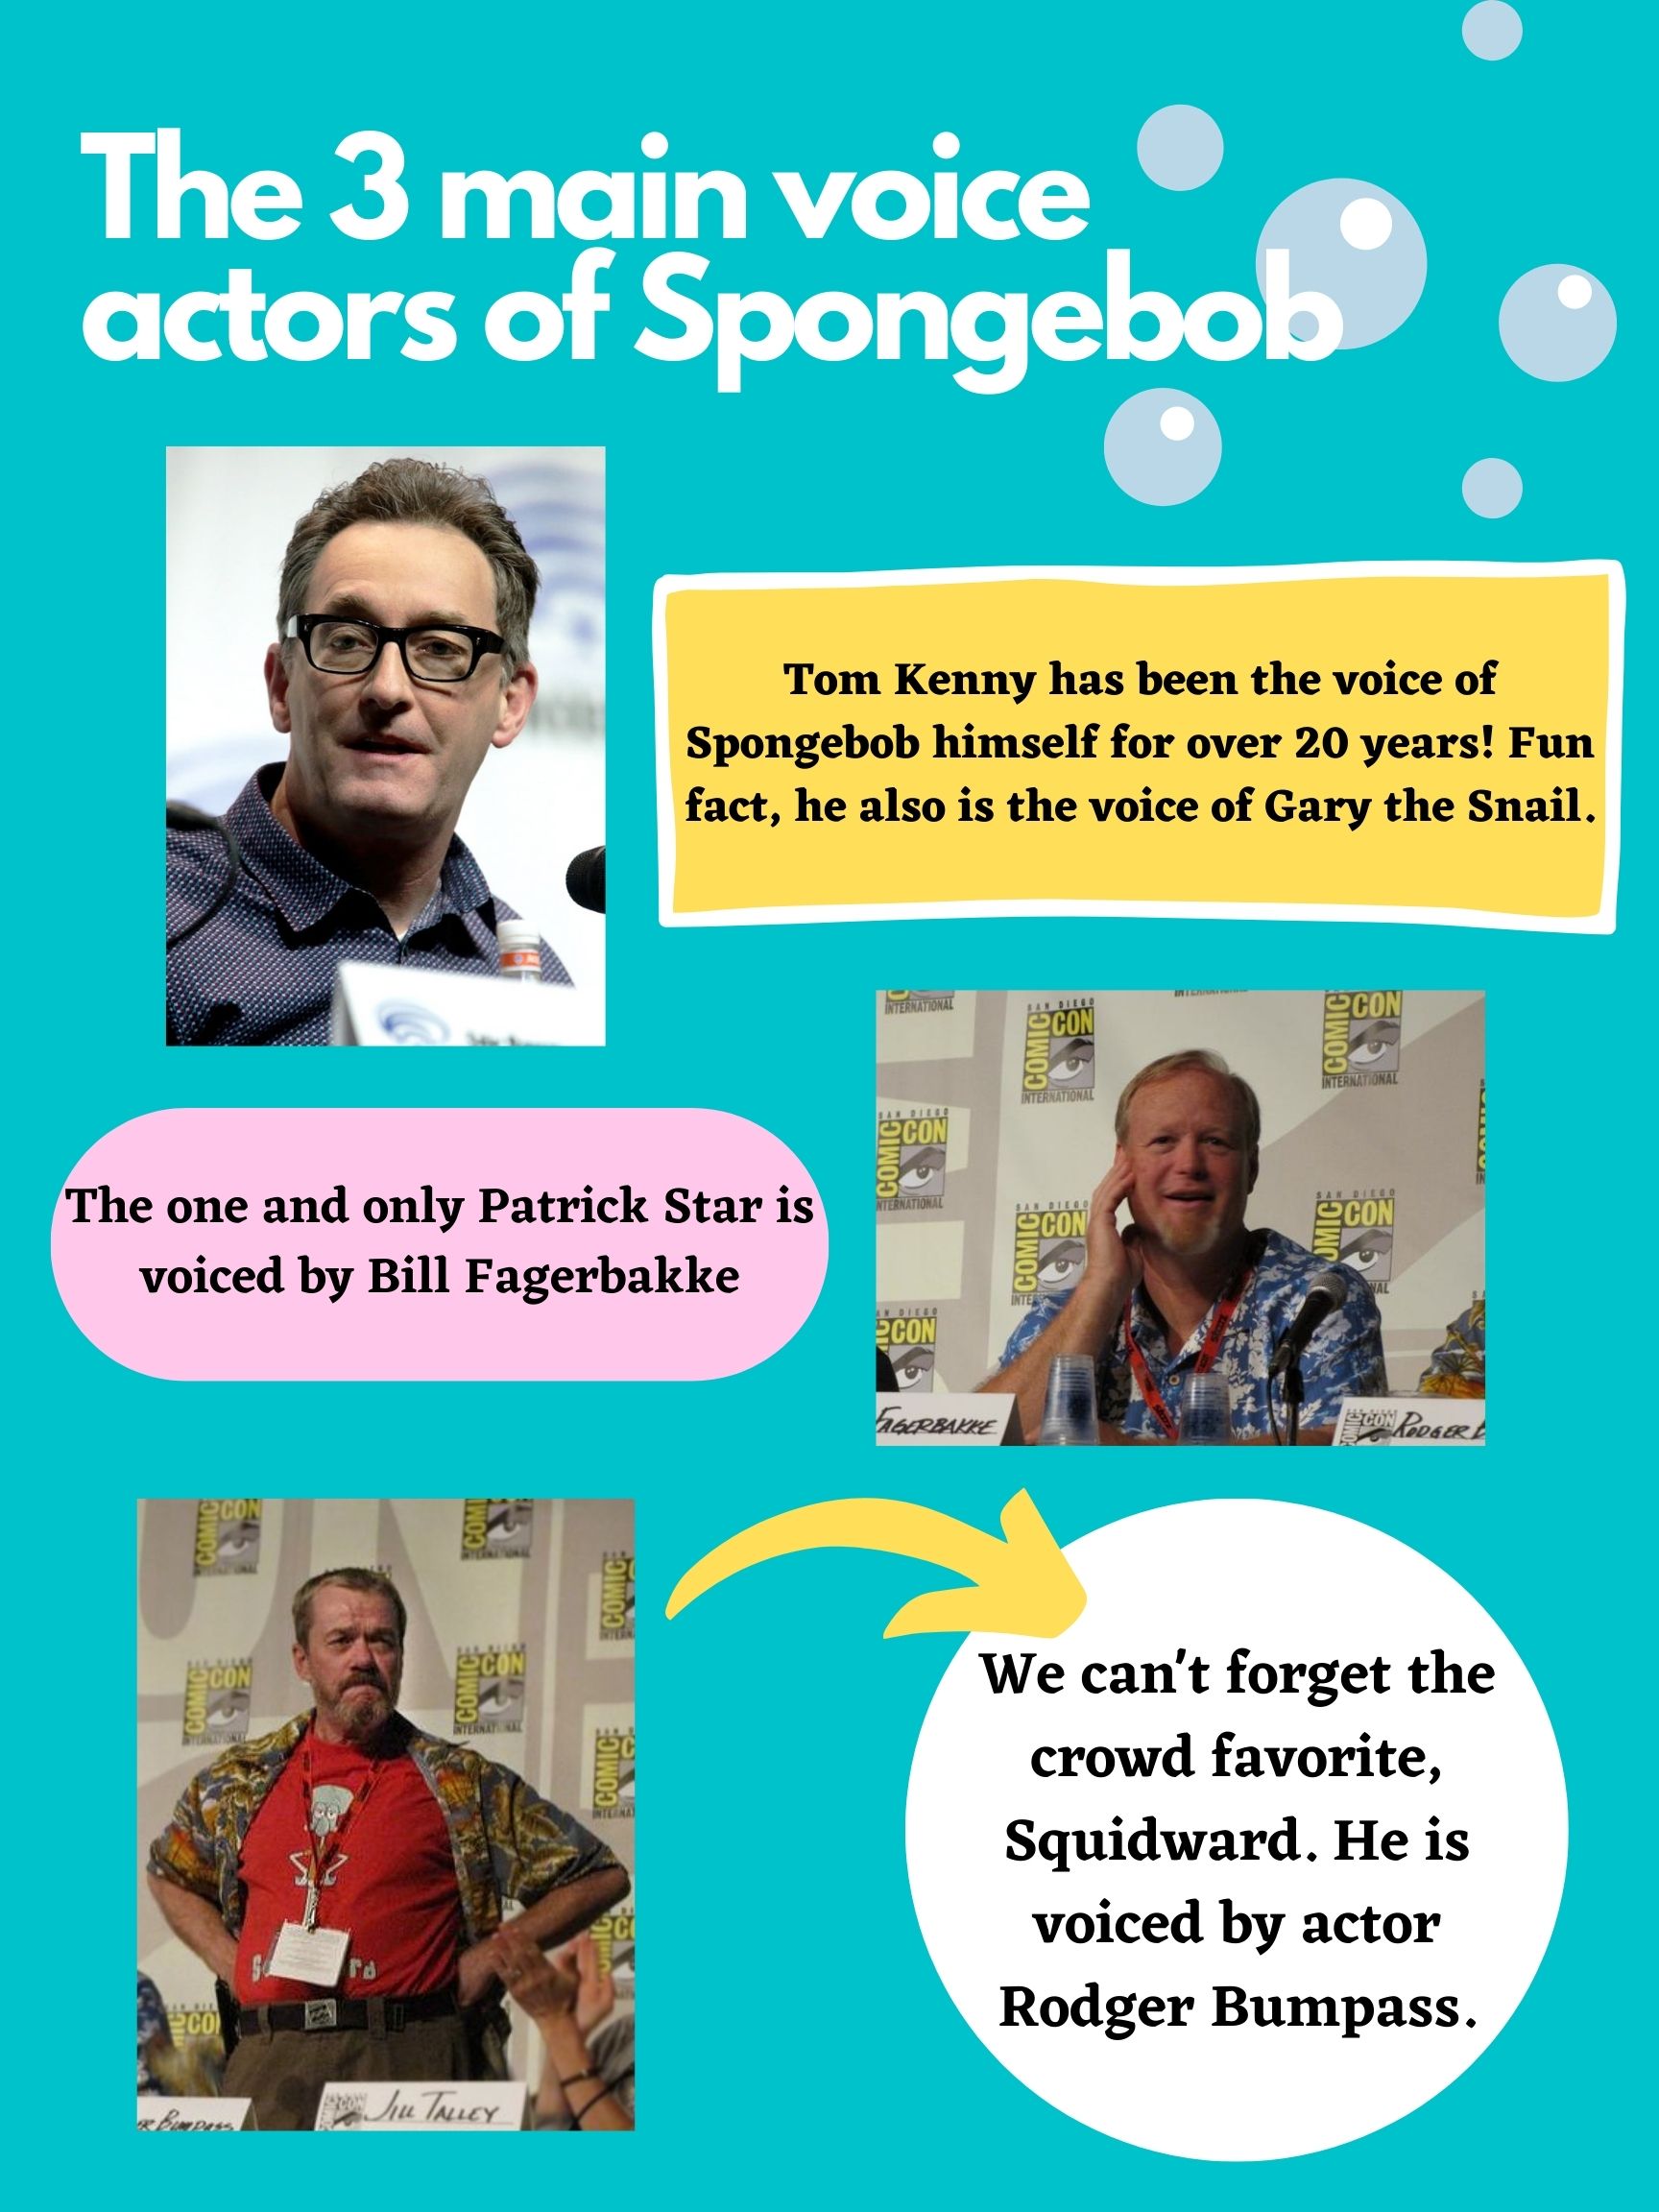 Top 5 voice actors of Spongebob